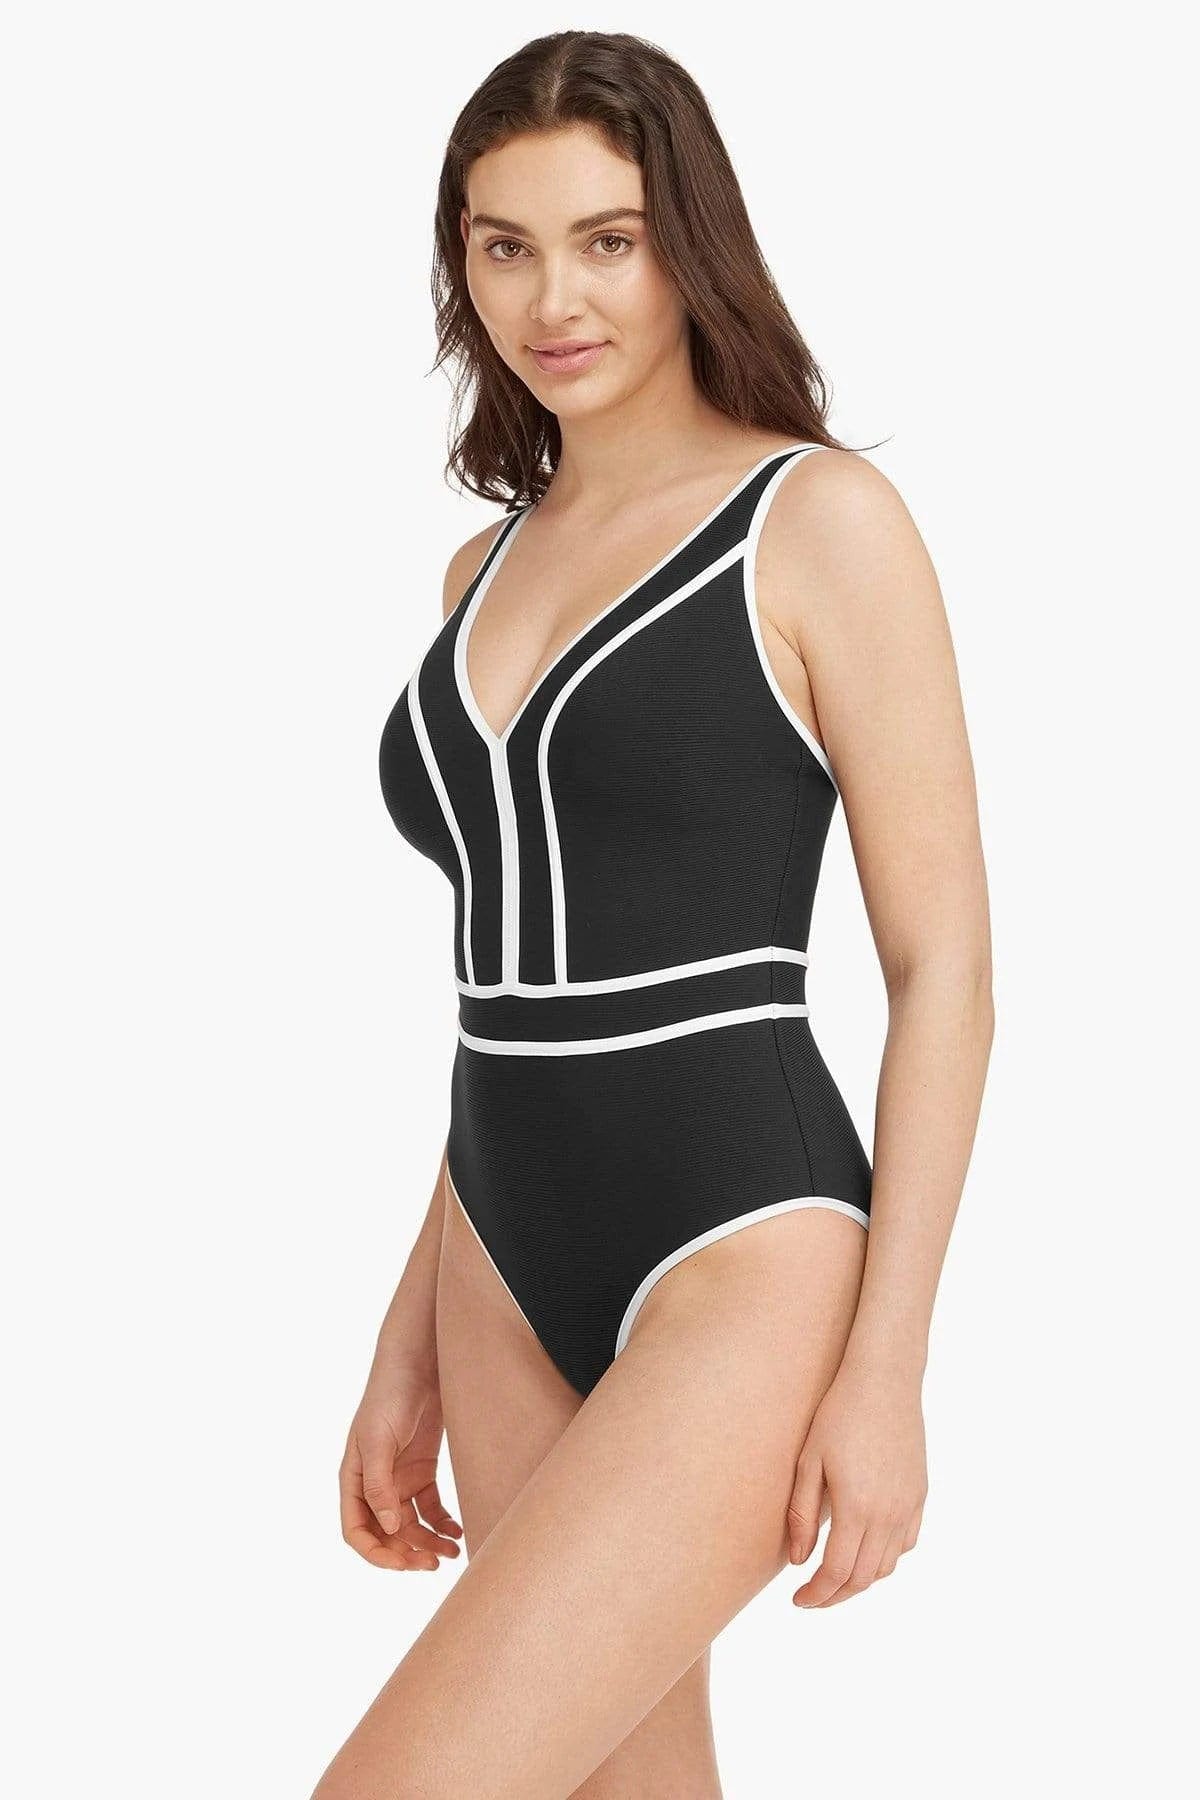 Elite Spliced Multifit One Piece - Sea Level - Splash Swimwear  - Nov22, one piece, sea level - Splash Swimwear 